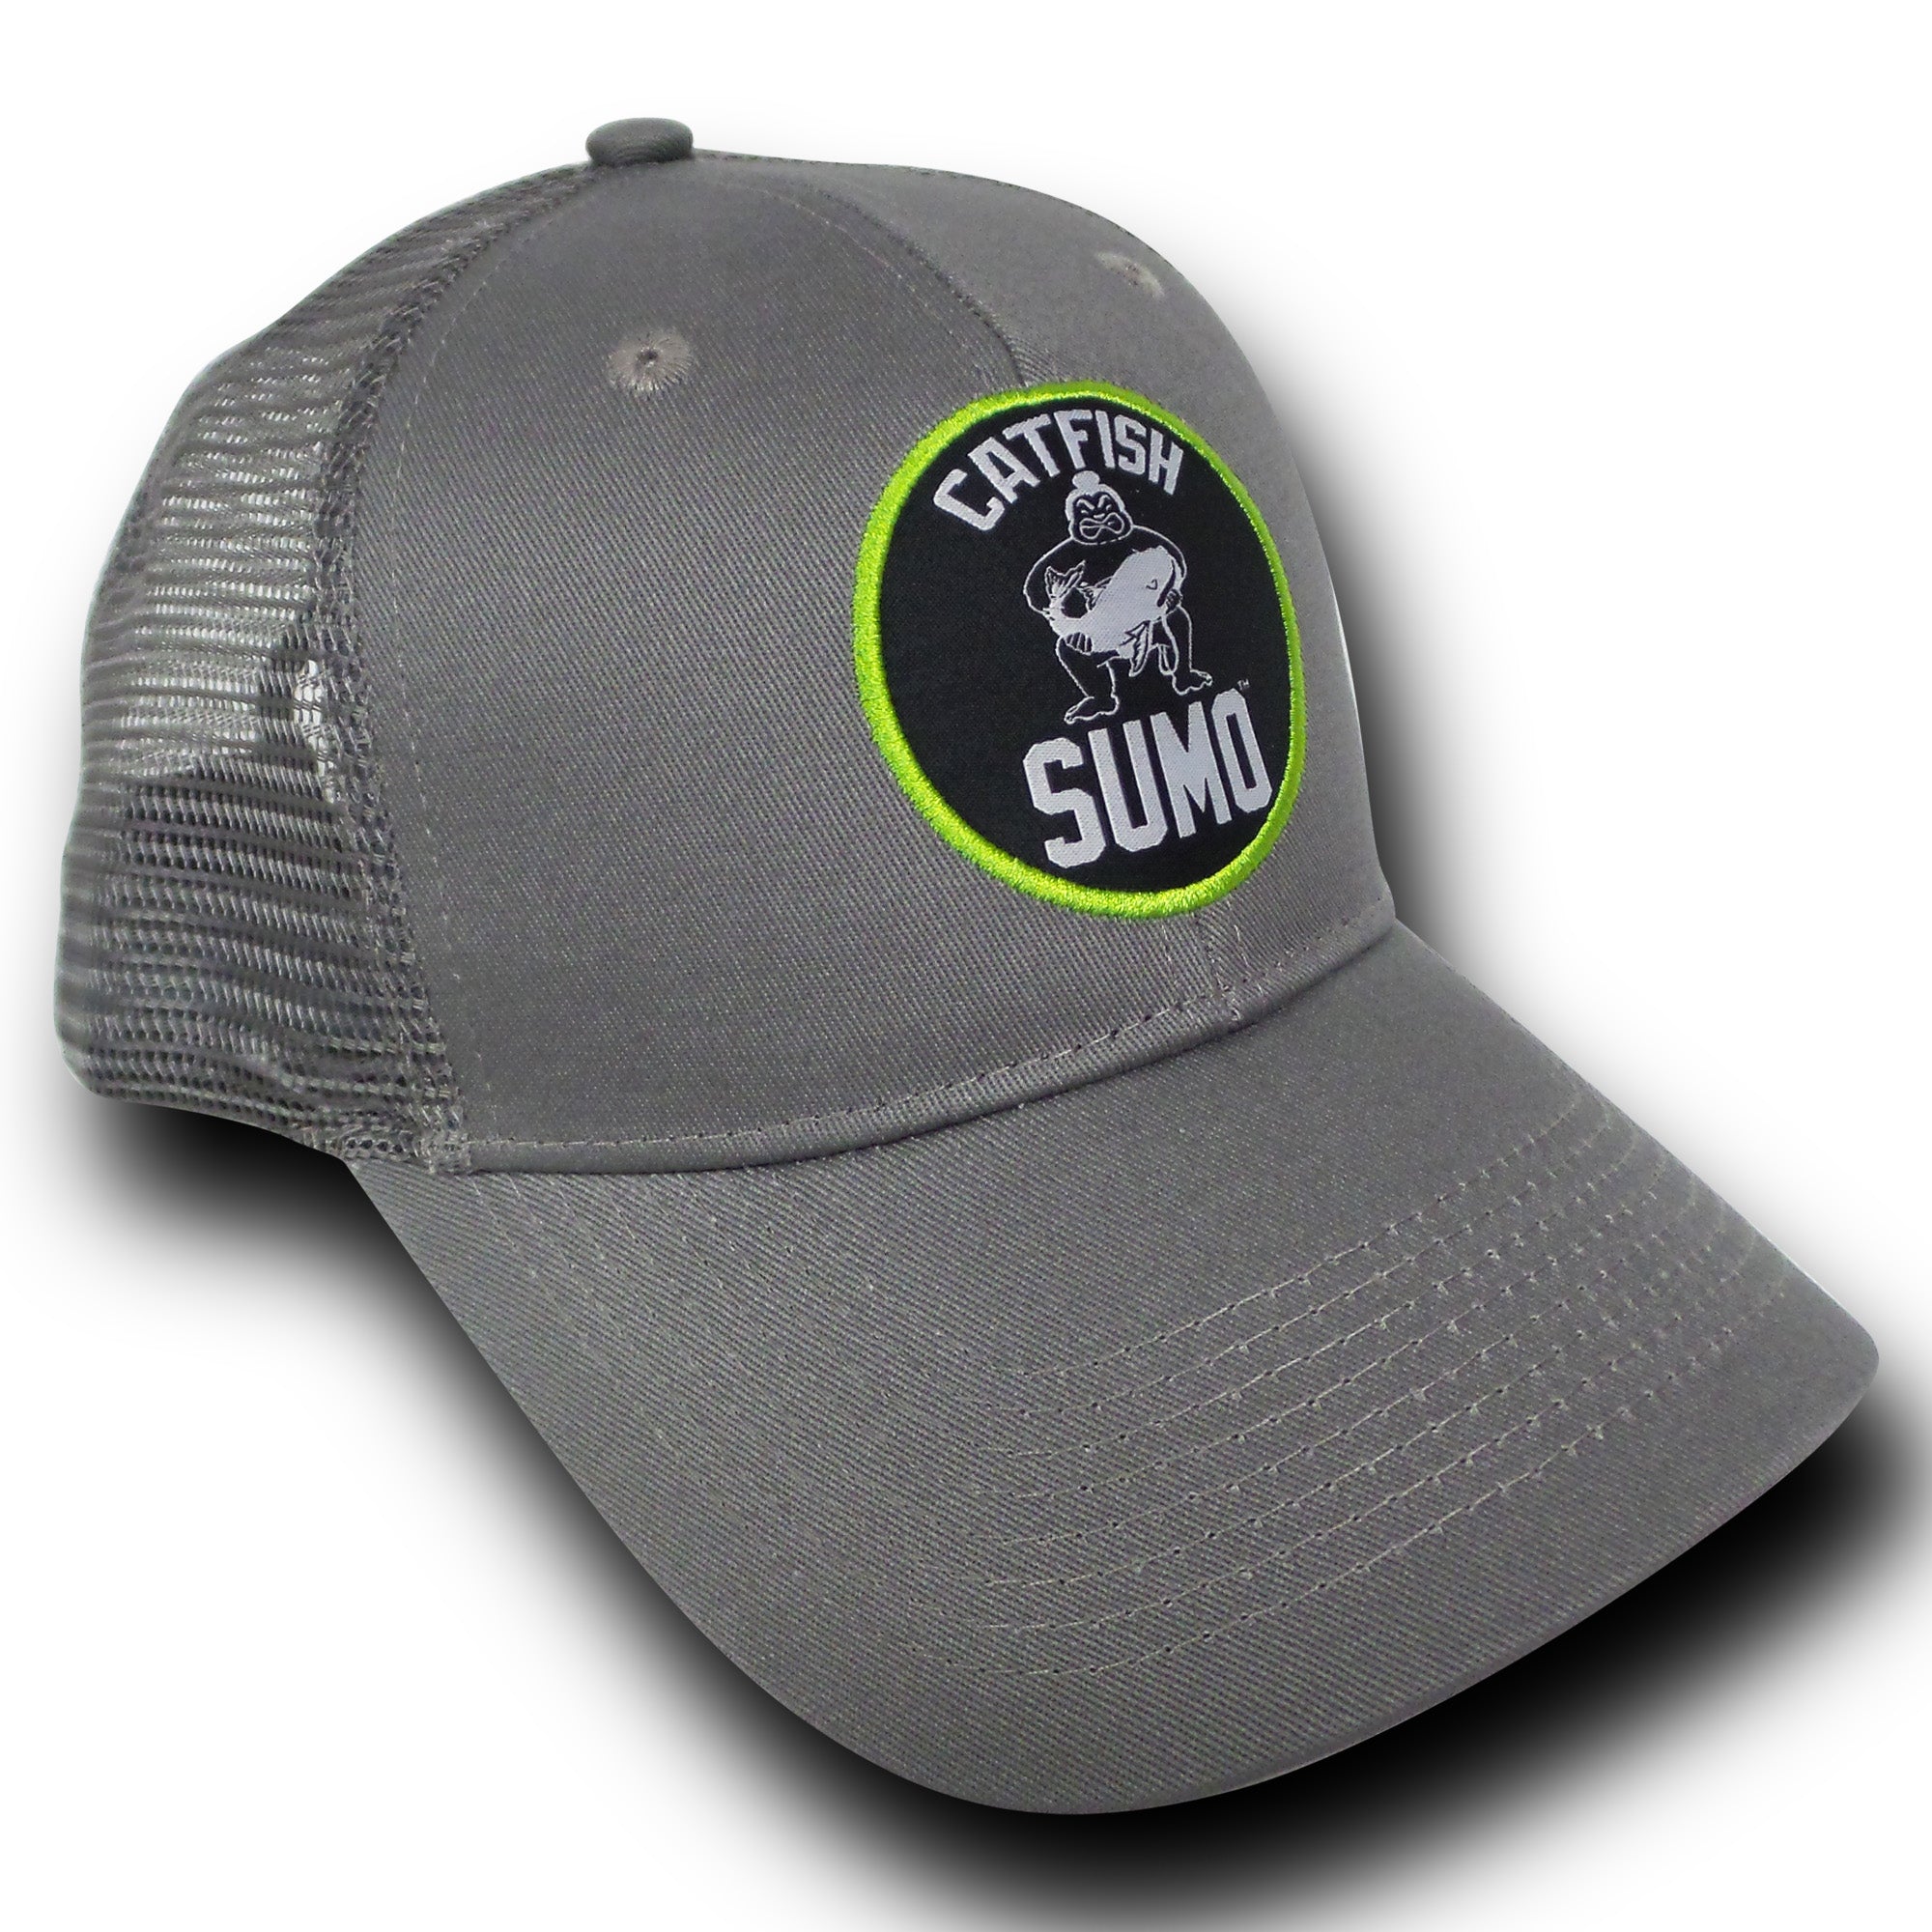 Catfish Sumo Snapback Trucker Hat, Adult Unisex, Size: One size, Gray